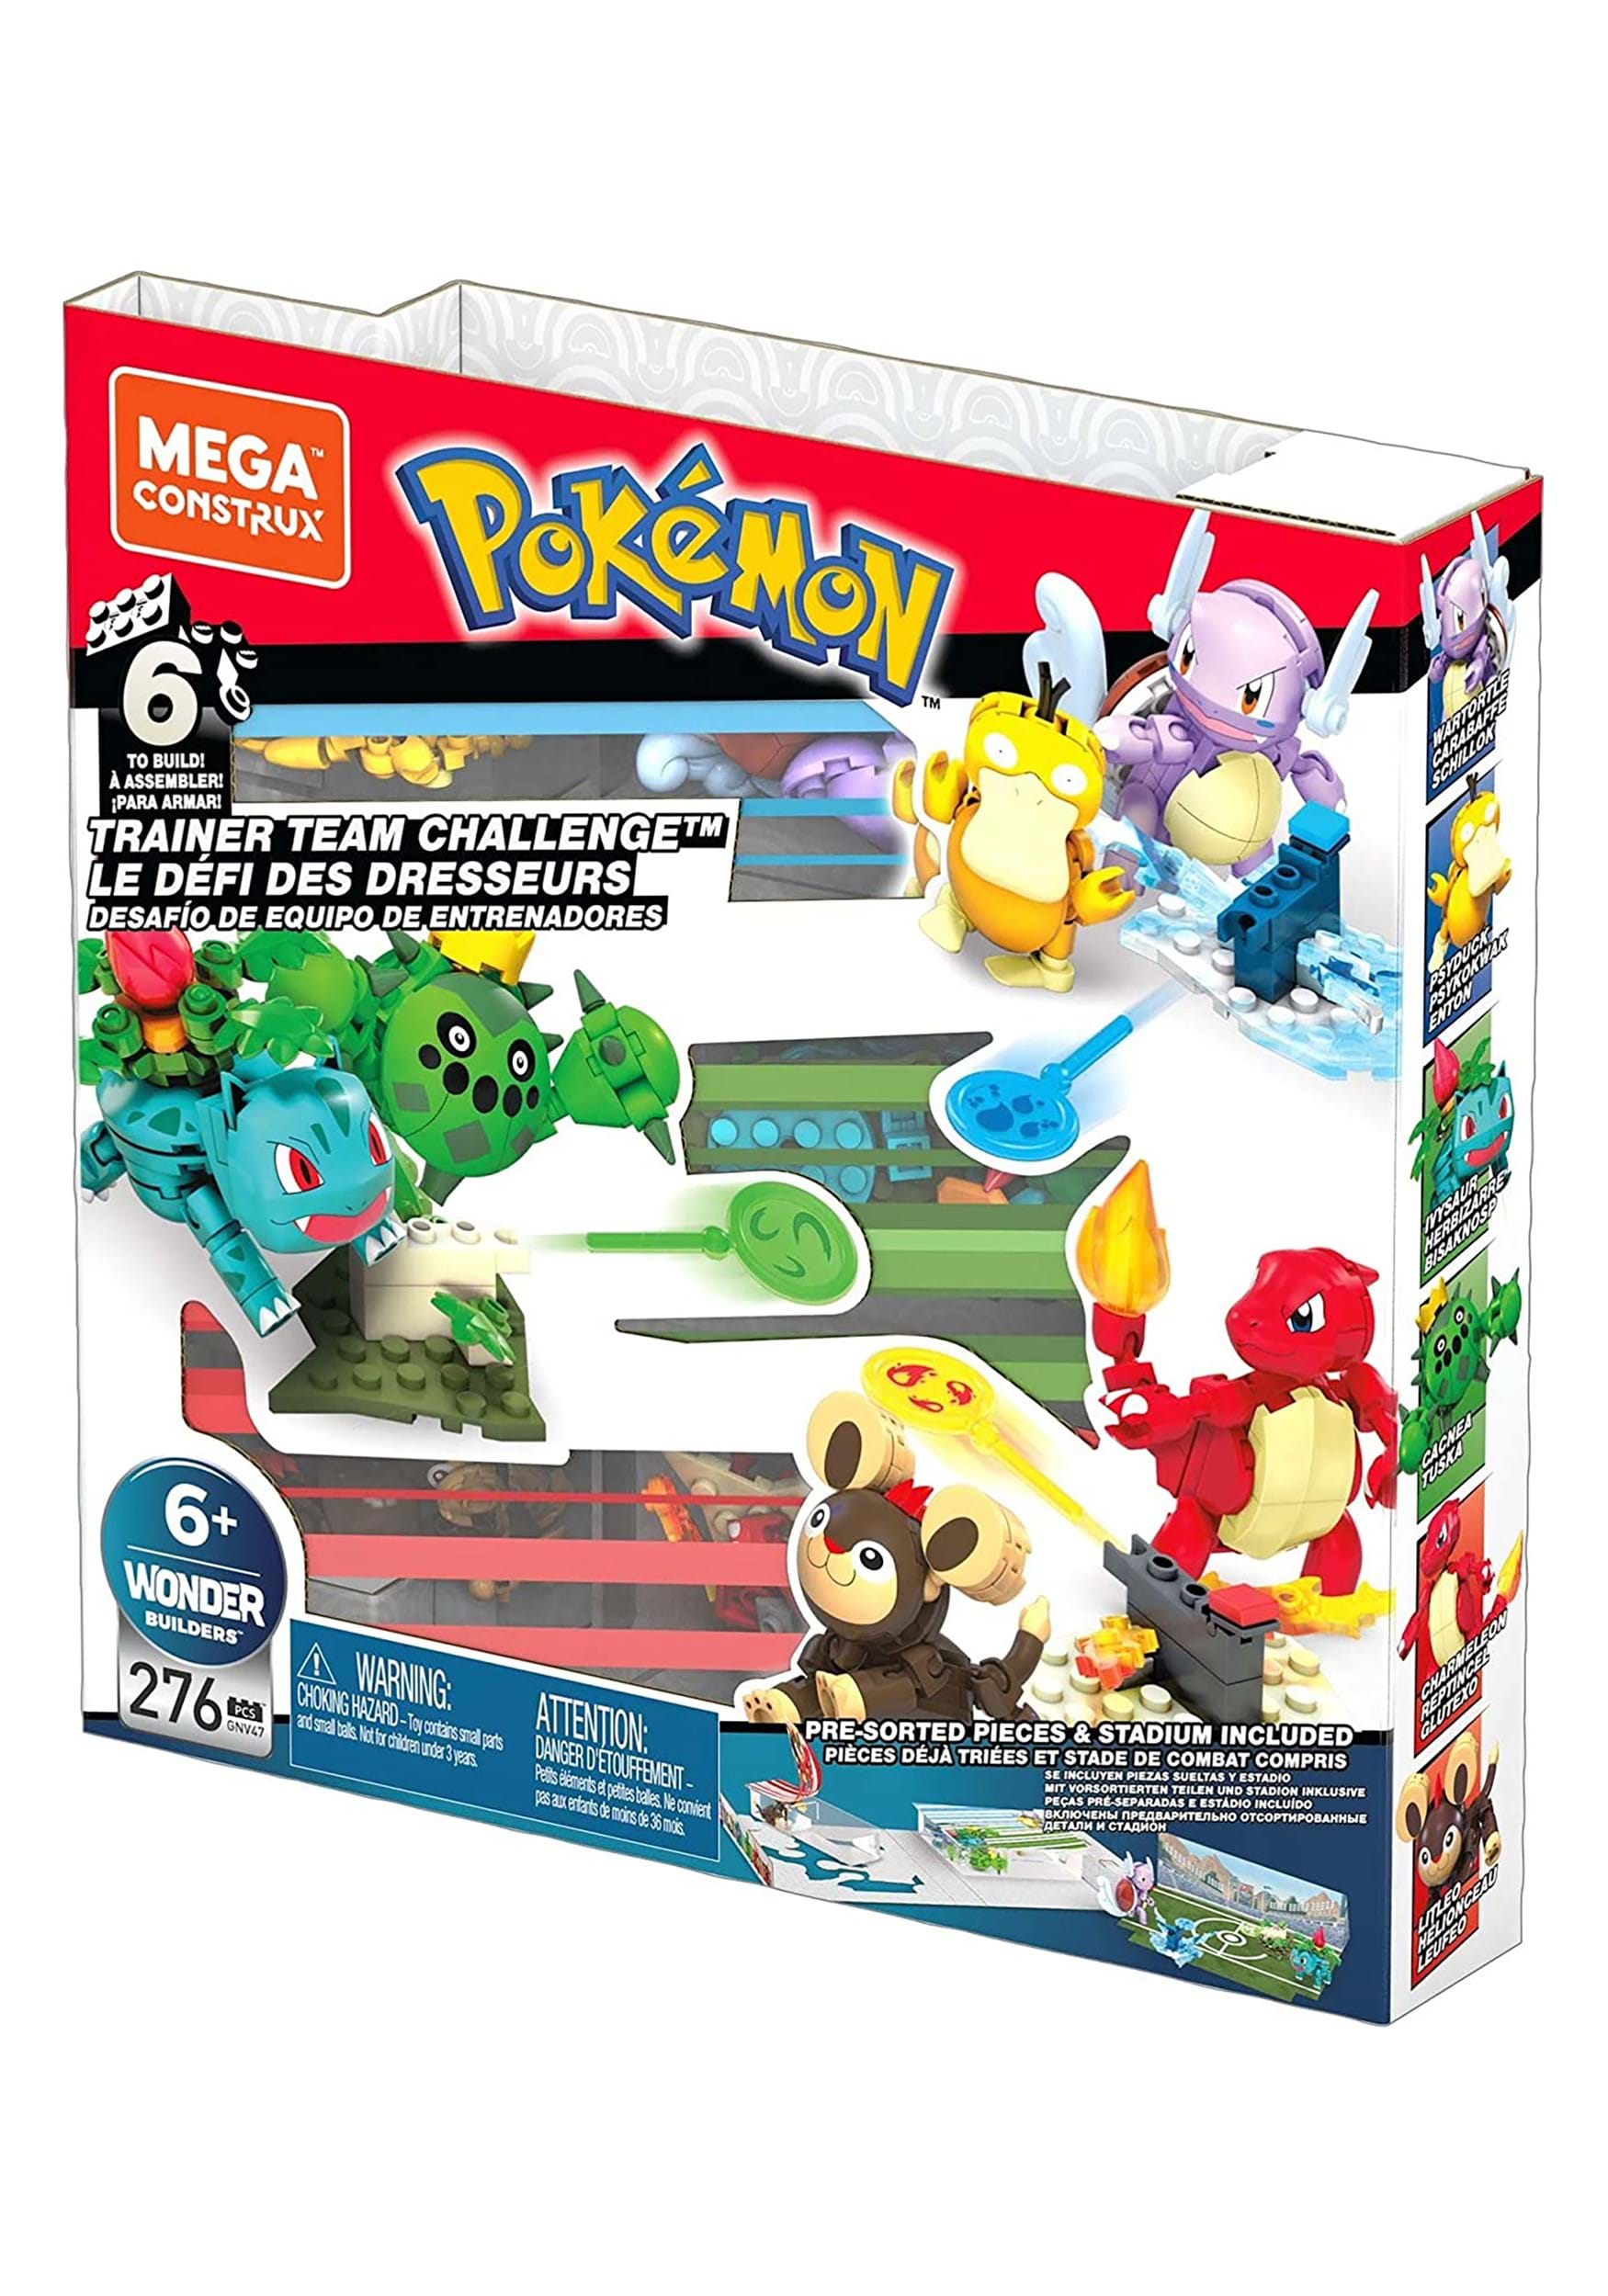 Mega Construx Pokémon Trainer Team Challenge Action Figure Set